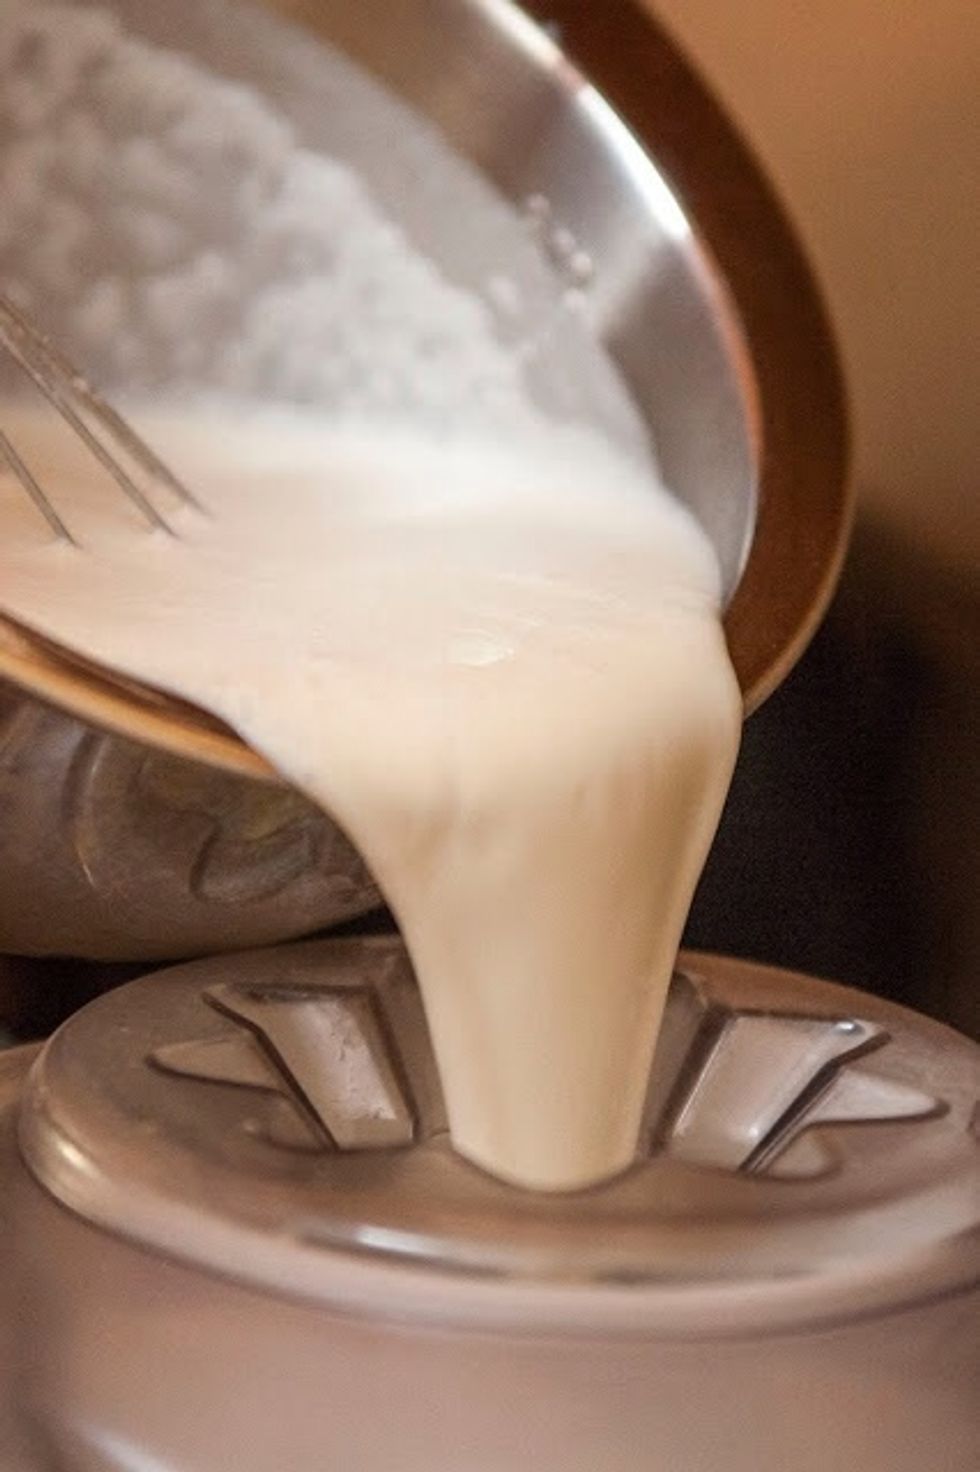 Pour the buttermilk, sugar, and vanilla into an ice cream machine.